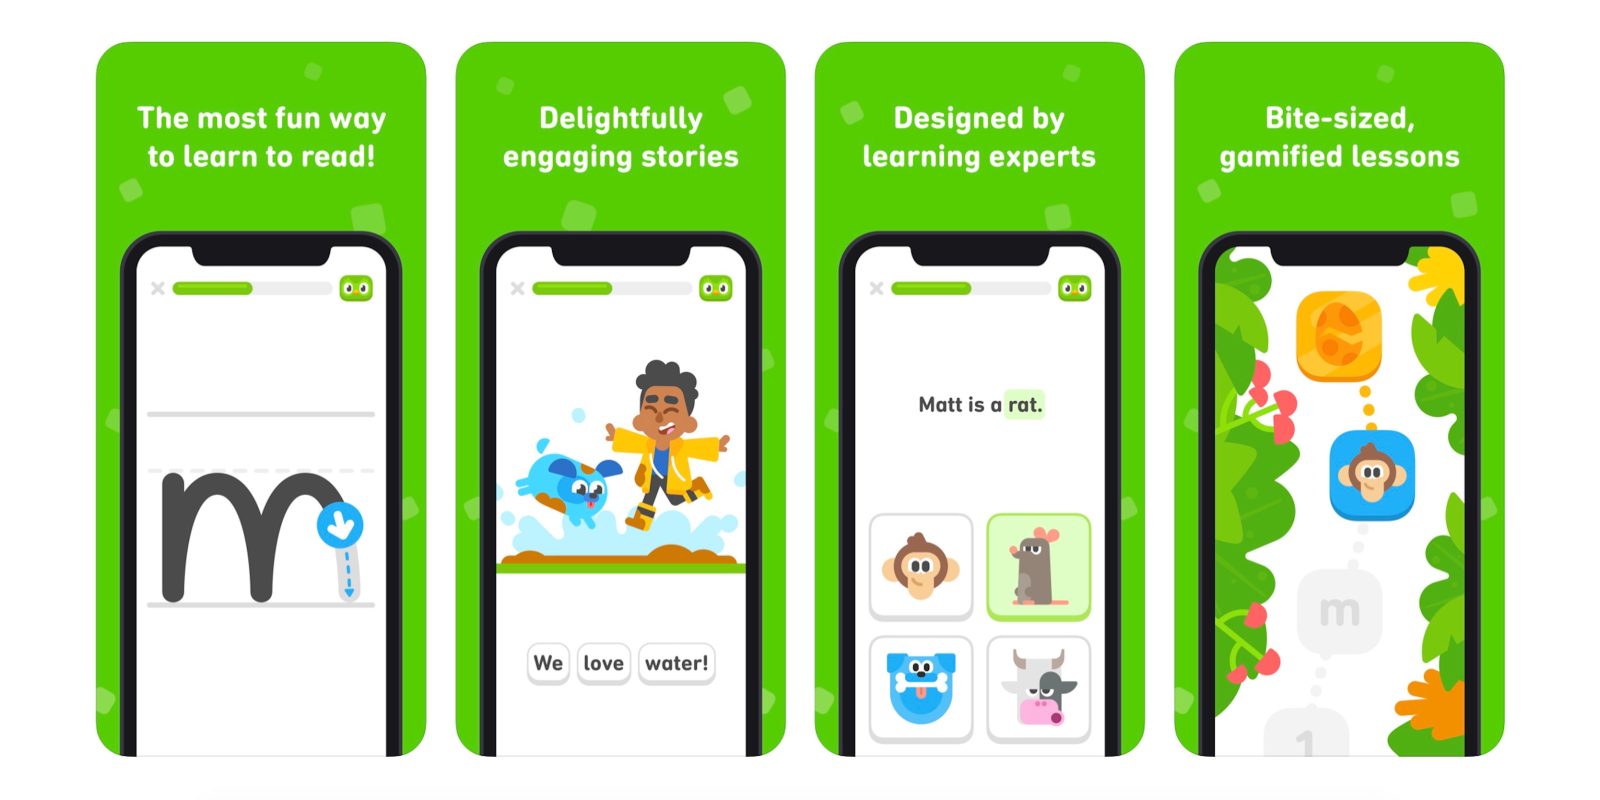 Duolingo terá app focado no ensino de matemática - MacMagazine